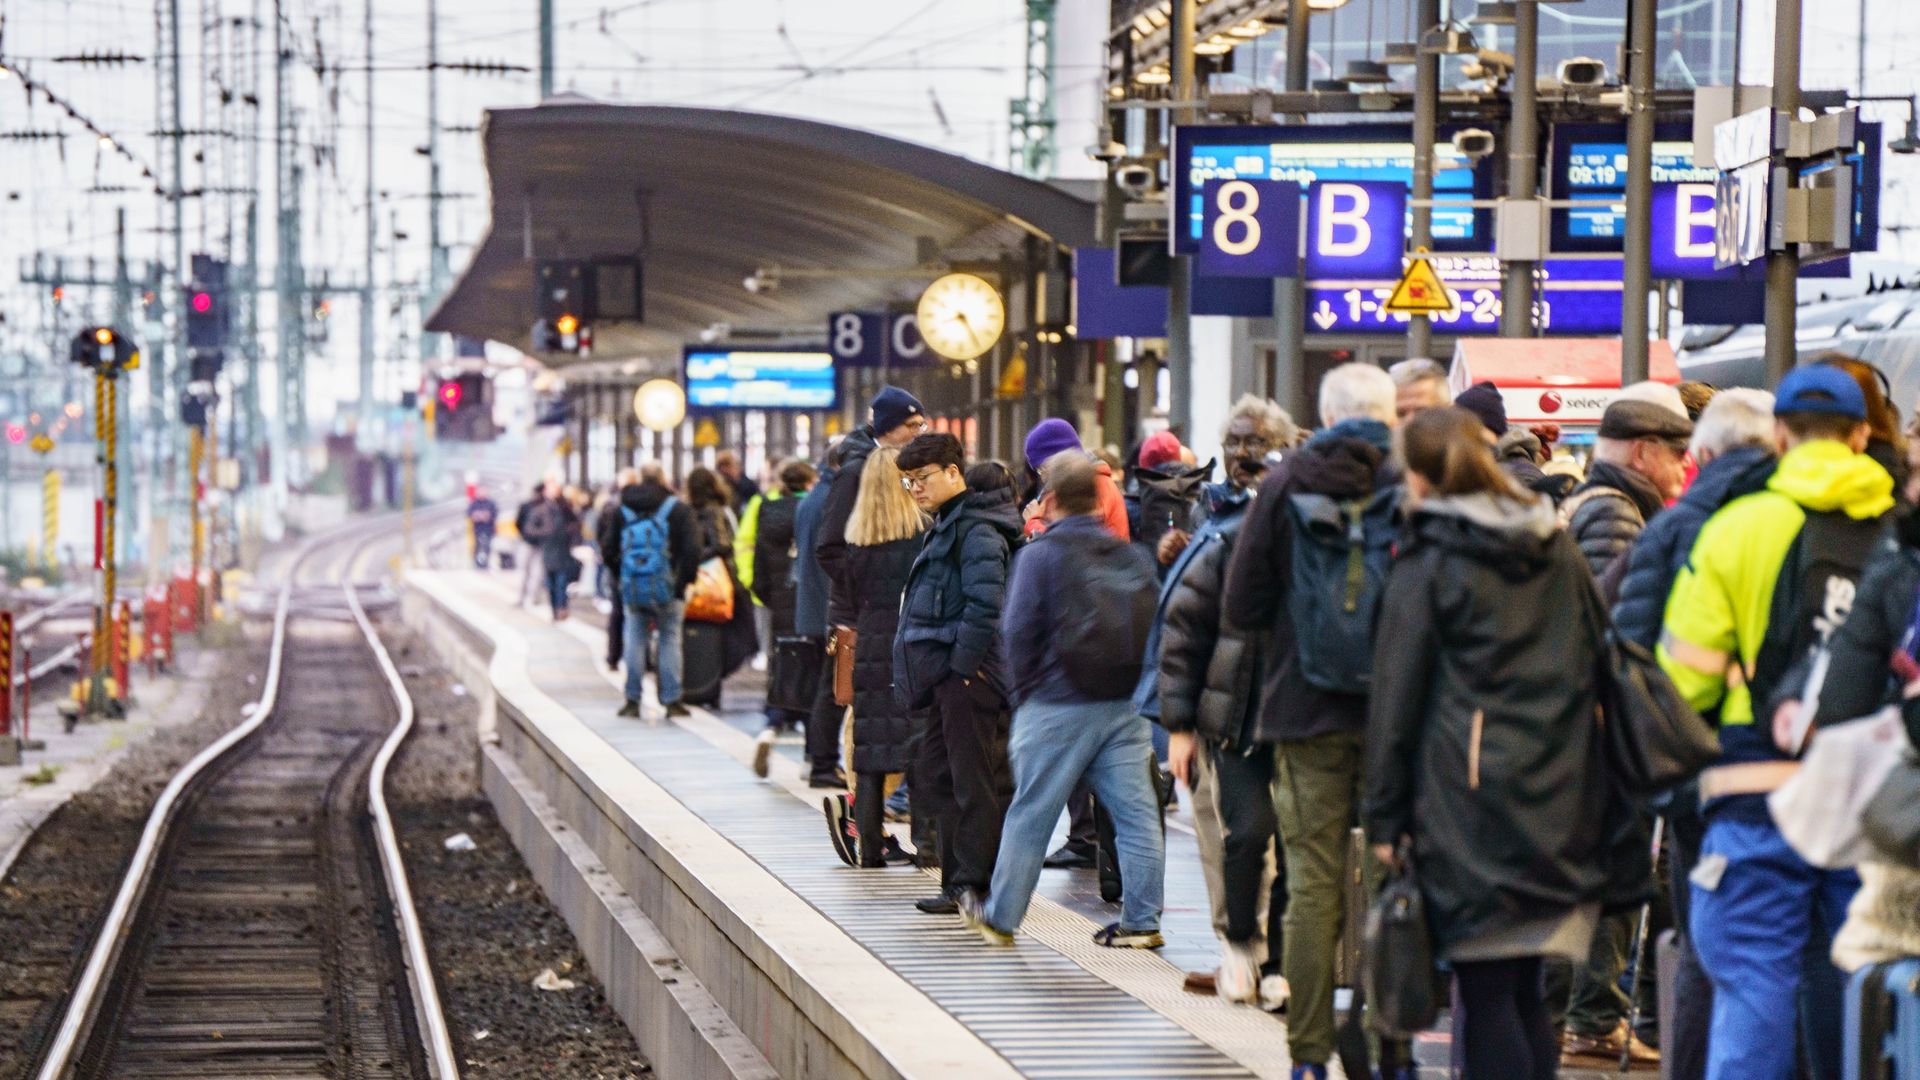 Die Deutsche Bahn stellt am Samstag angesichts des bevorstehenden Warnstreiks ein deutlich erhöhtes Fahrgastaufkommen fest.Foto: Frank Rumpenhorst/dpa/Archiv